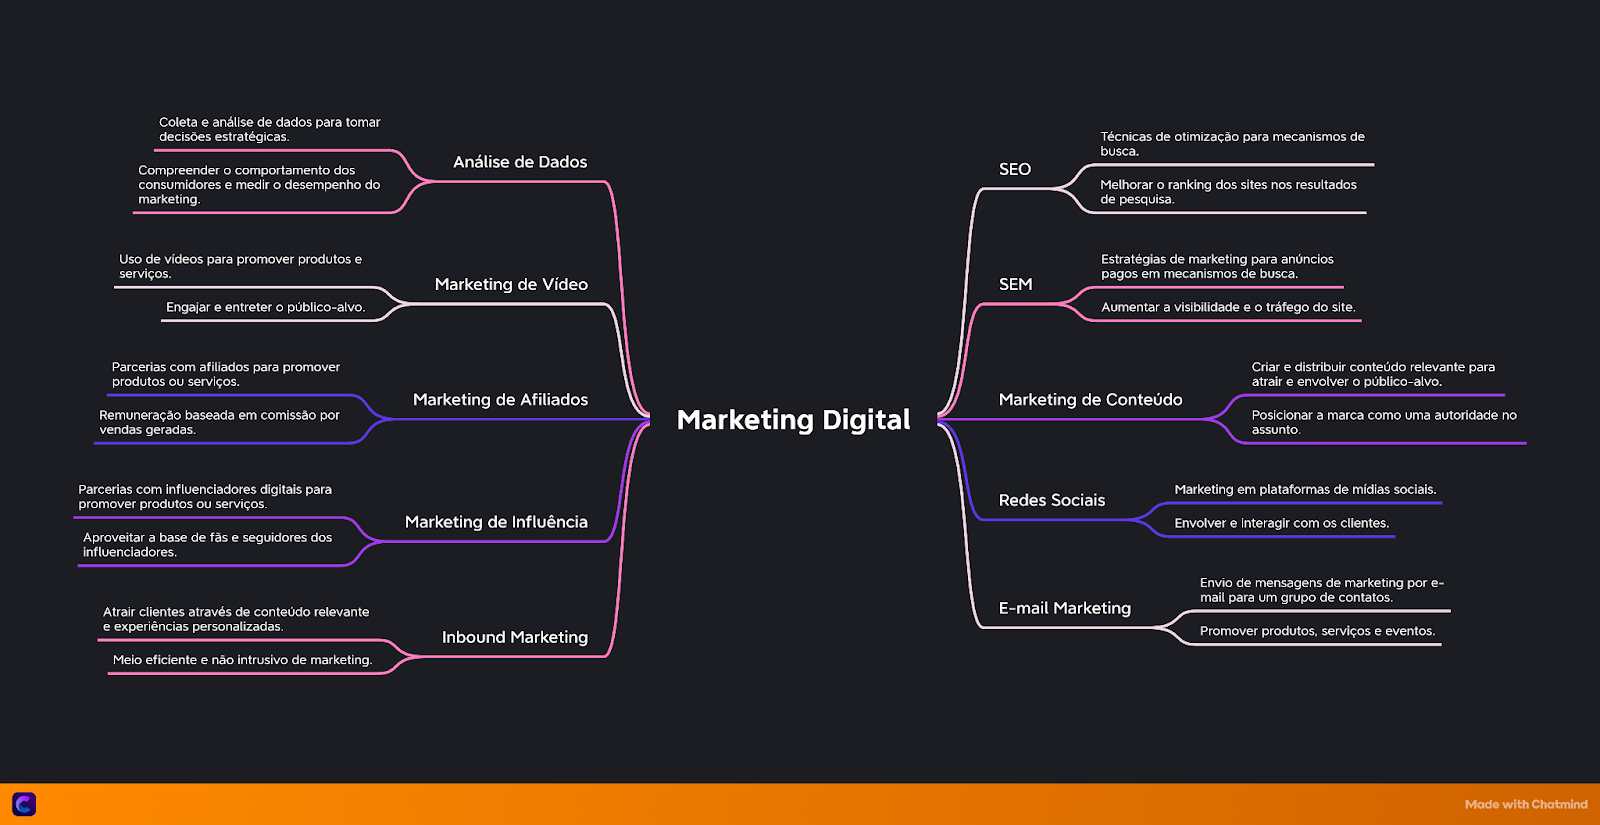 Exemplo de mapa mental usado para buscar temas de conteiudos para marketing digital. 